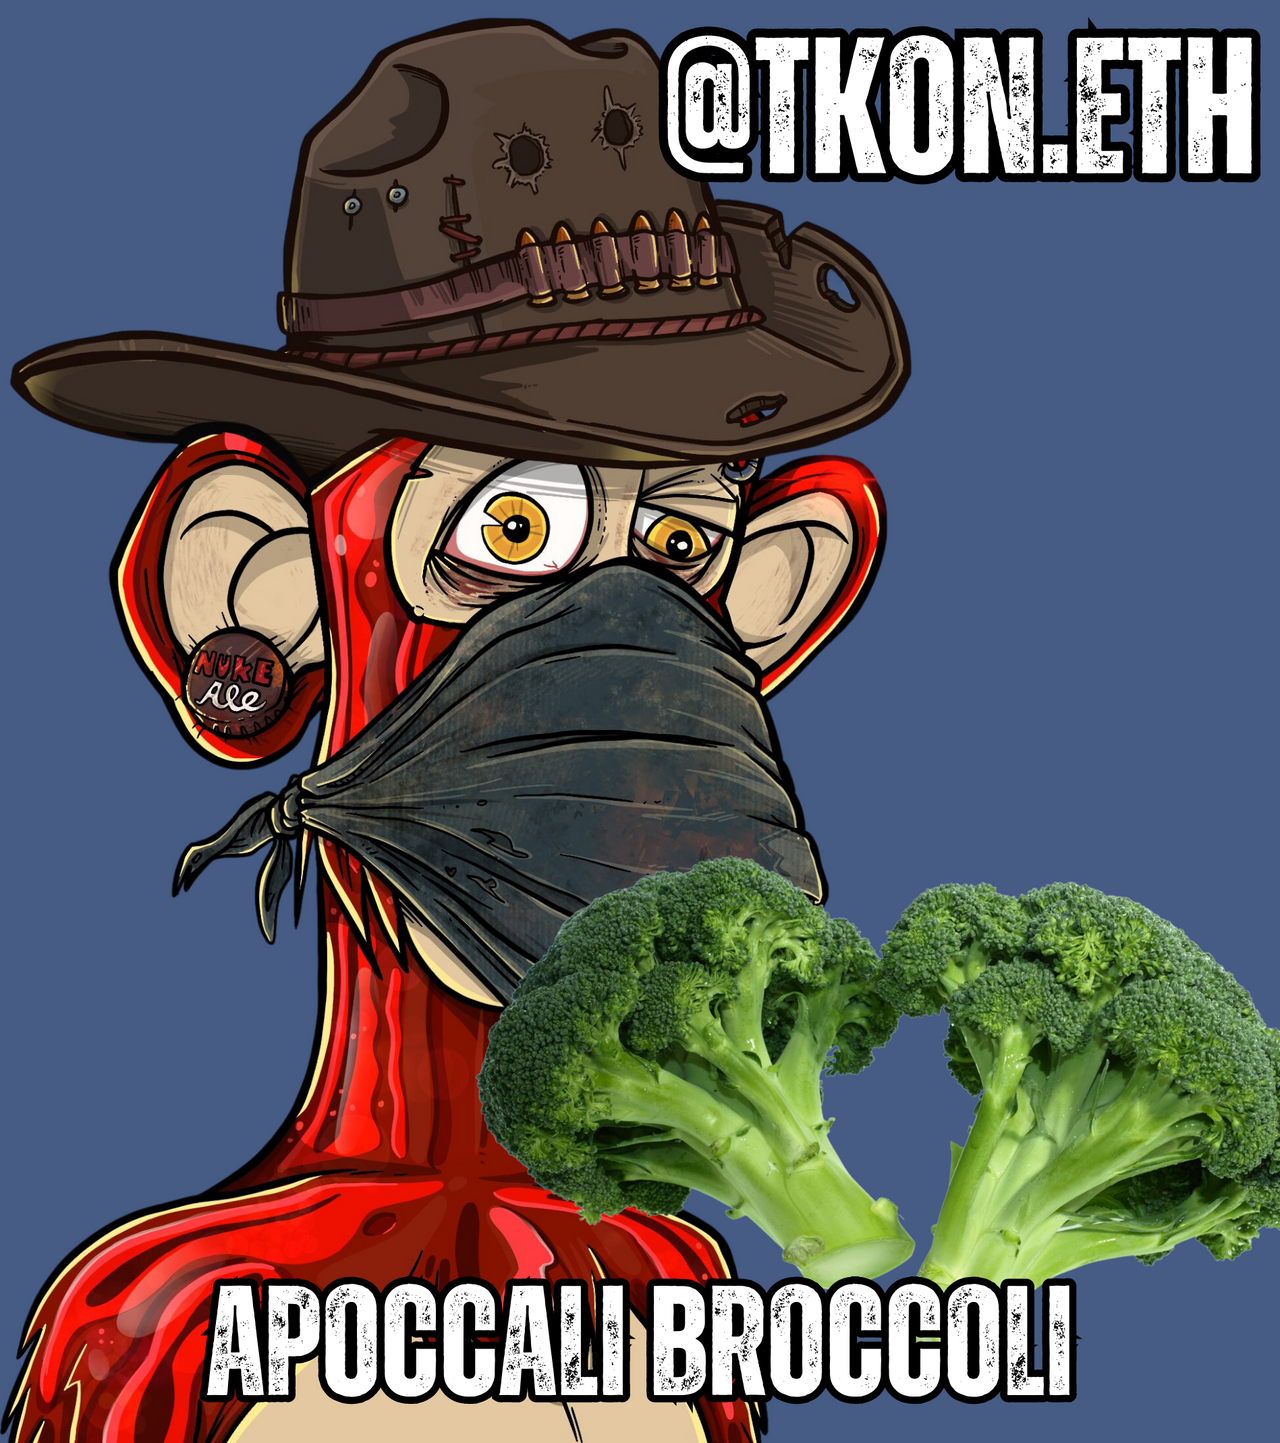 Apoccali Broccoli